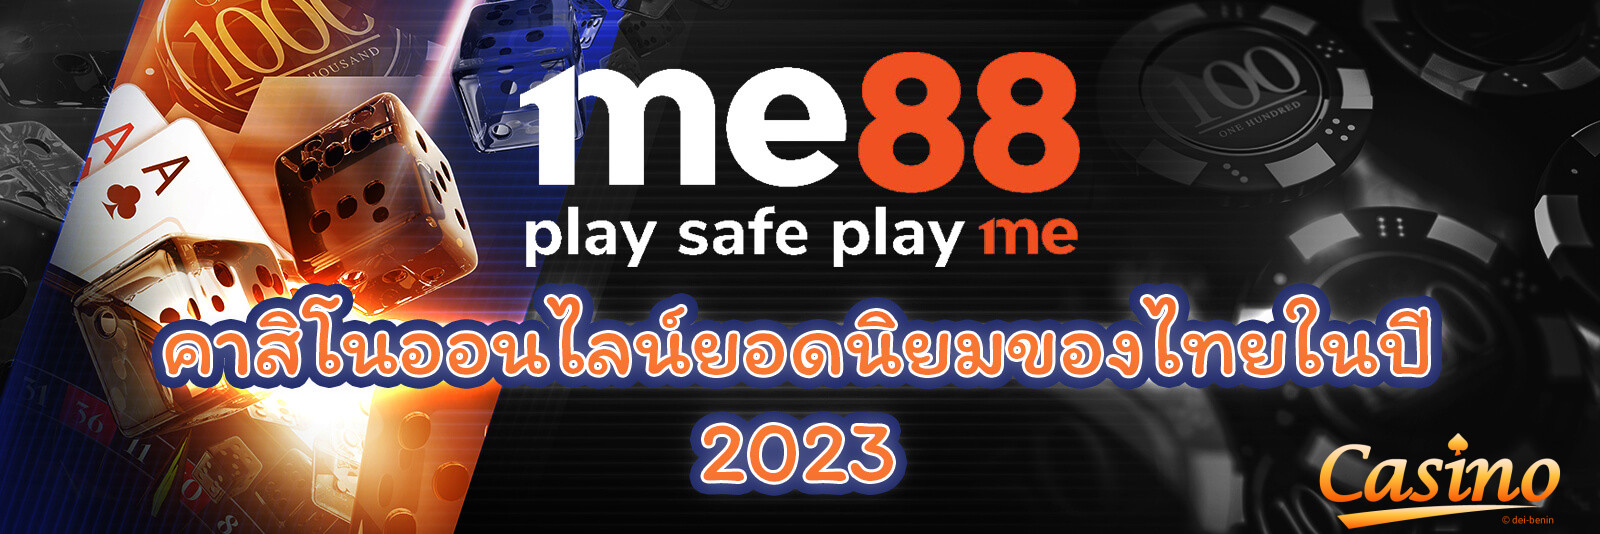 Me88 คาสิโนออนไลน์ยอดนิยมของไทยในปี 2023